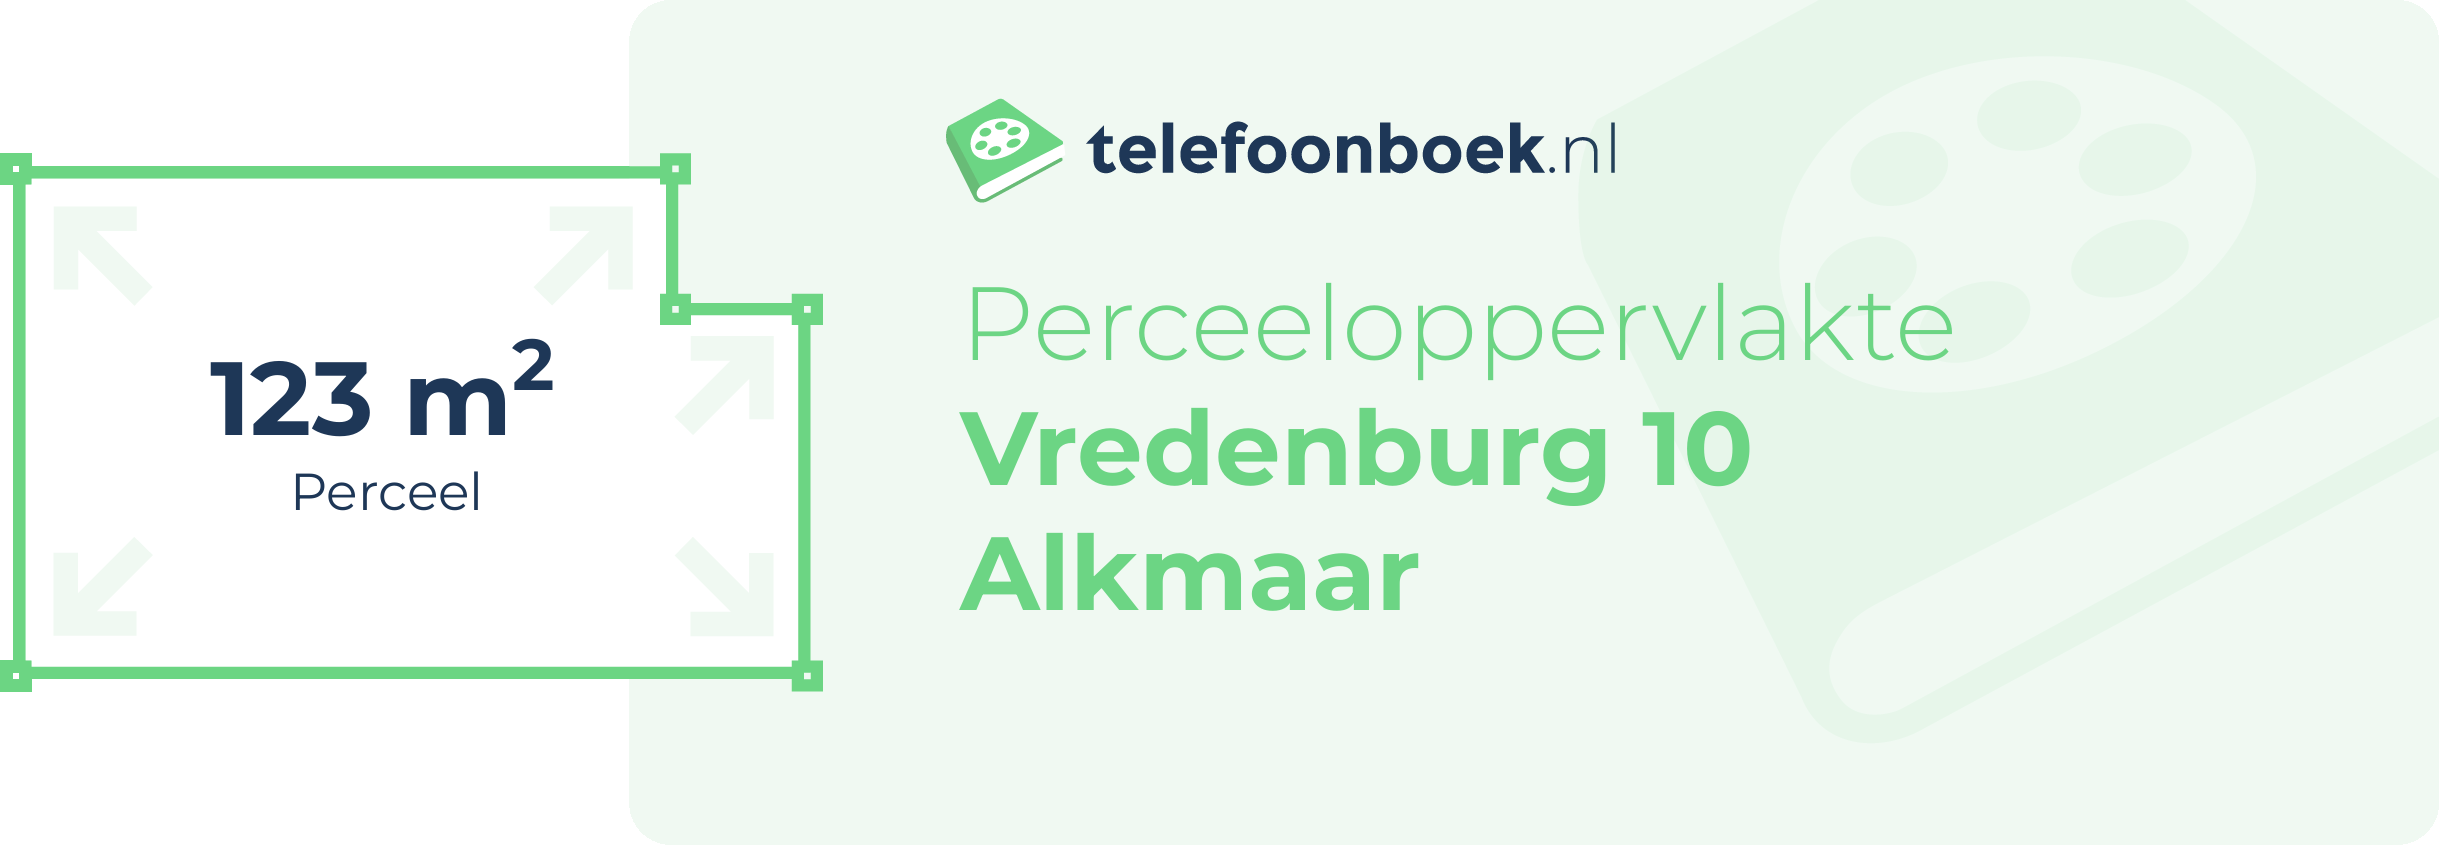 Perceeloppervlakte Vredenburg 10 Alkmaar